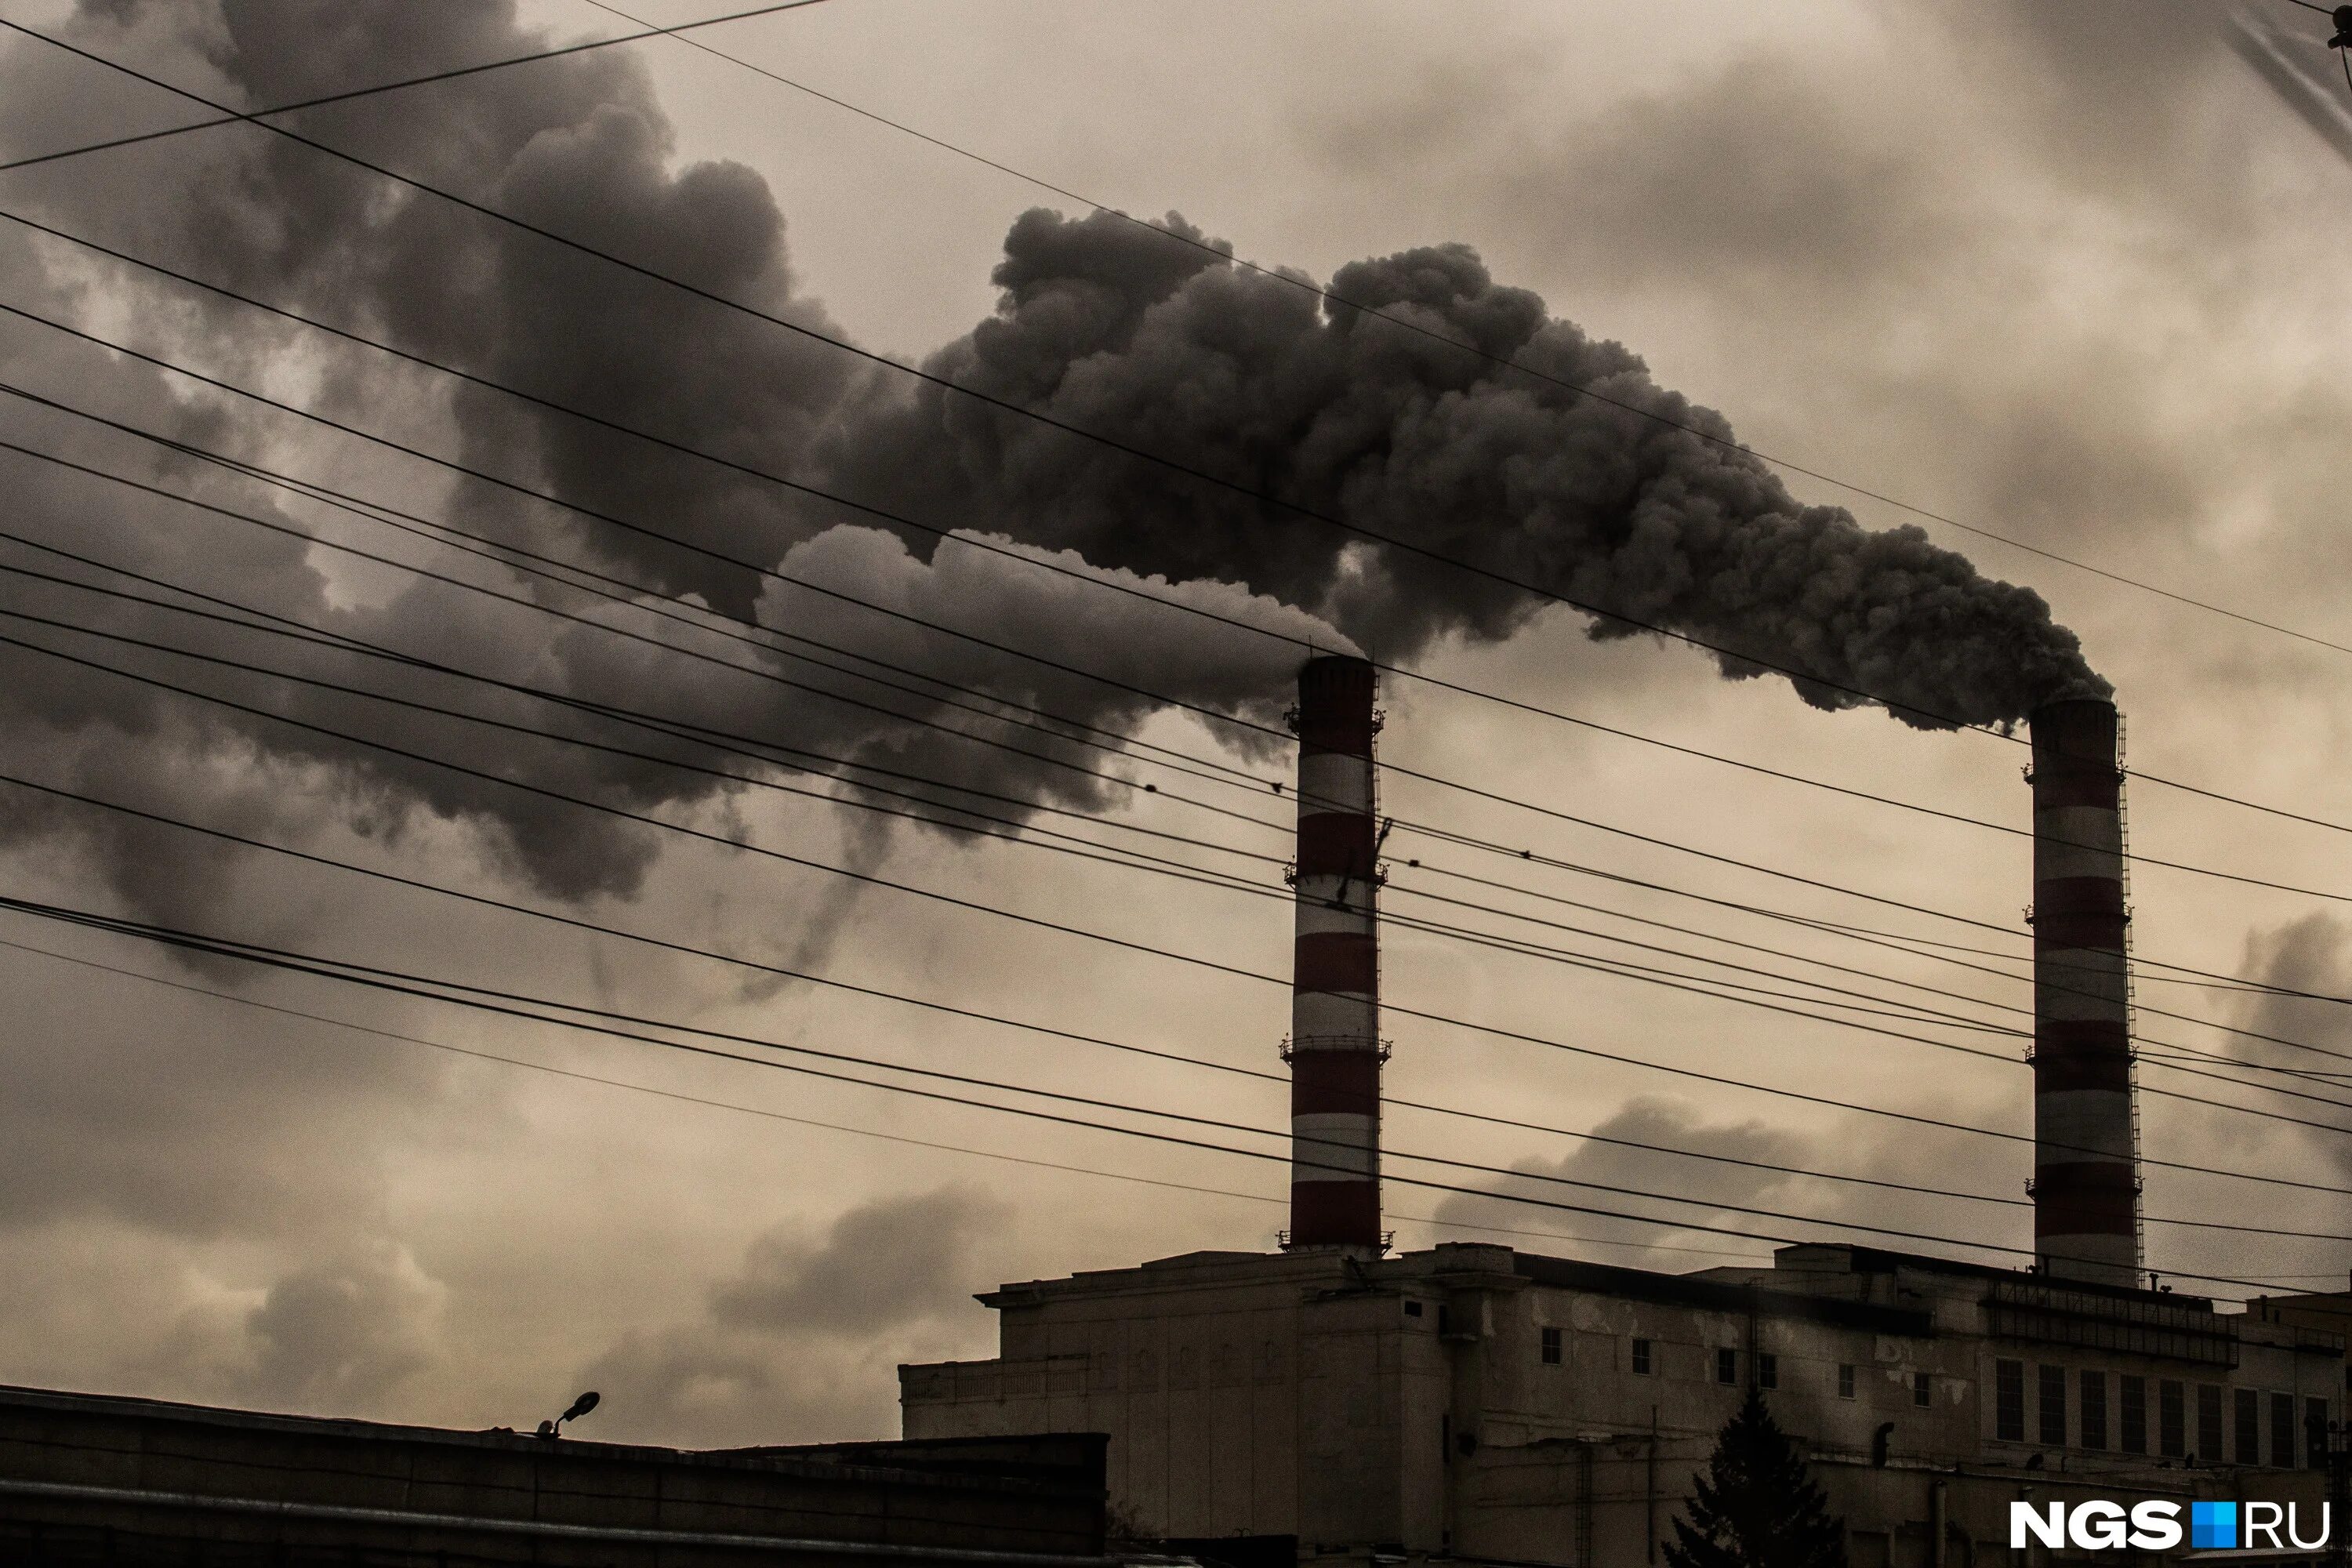 Воздух 3 новосибирск. Загрязнение атмосферы Новосибирск. Загрязненный воздух в Новосибирске. Экологические проблемы Новосибирска. Загрязнение воздуха ТЭЦ.